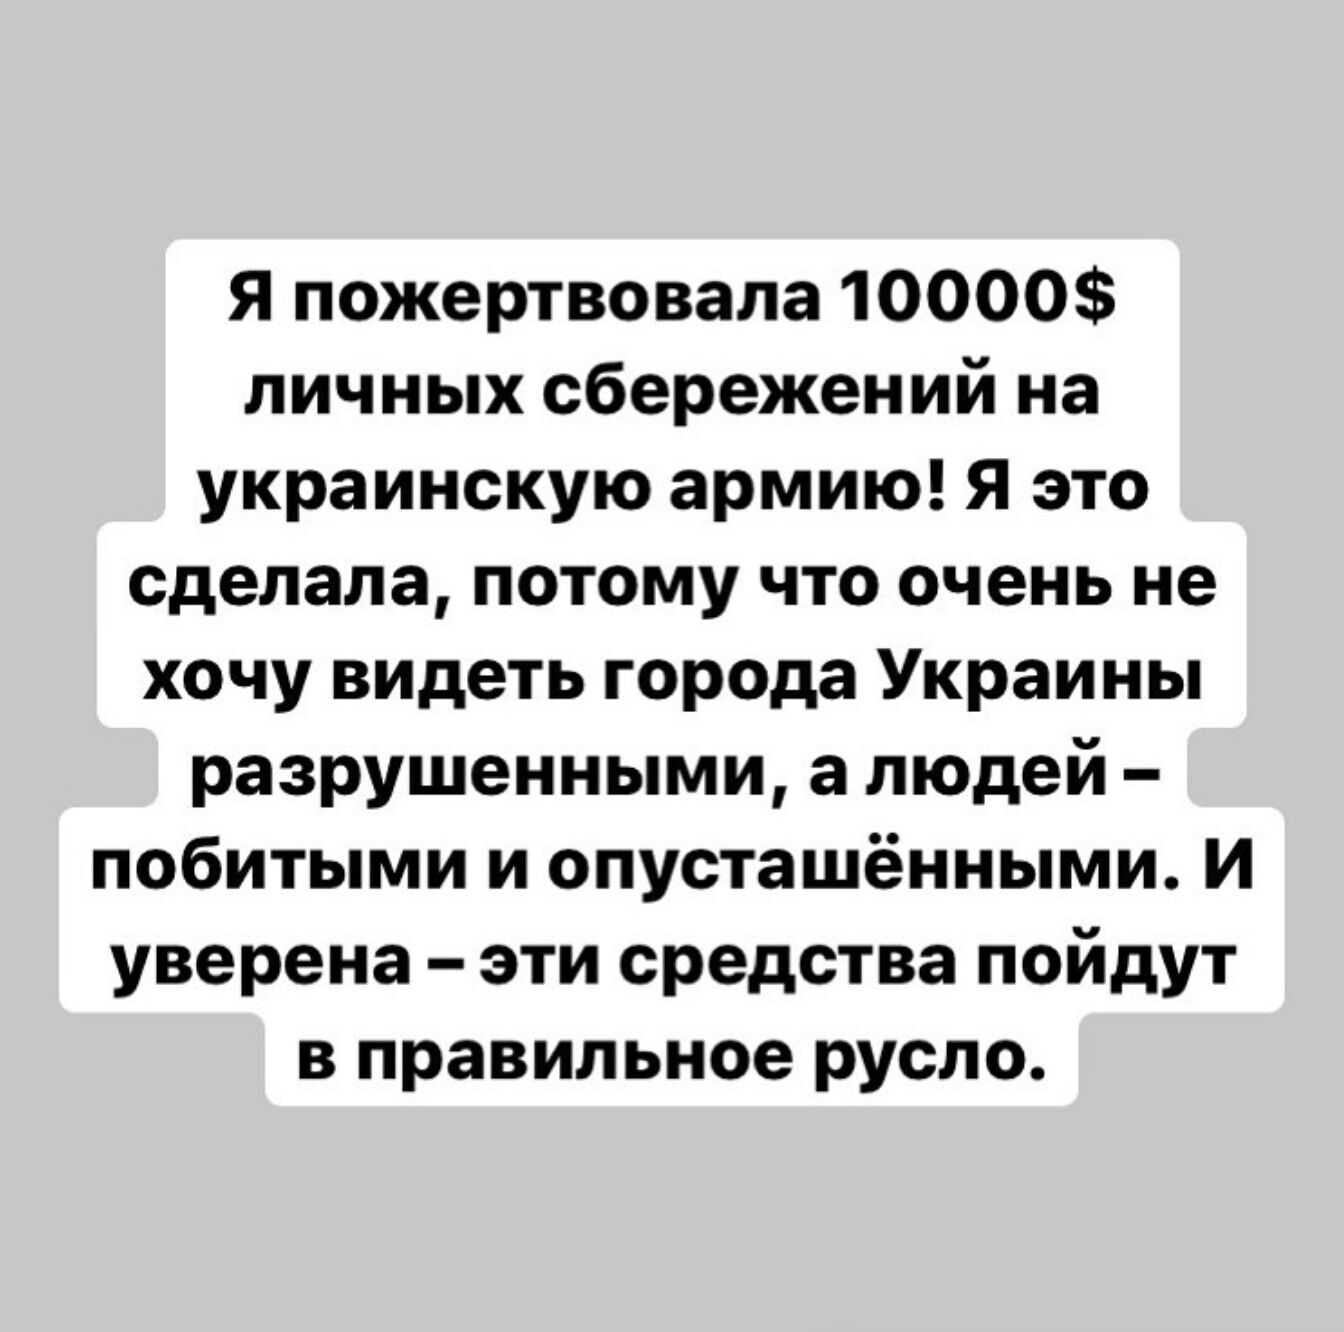 Лия Ахеджакова перевела ВСУ10 тысяч долларов